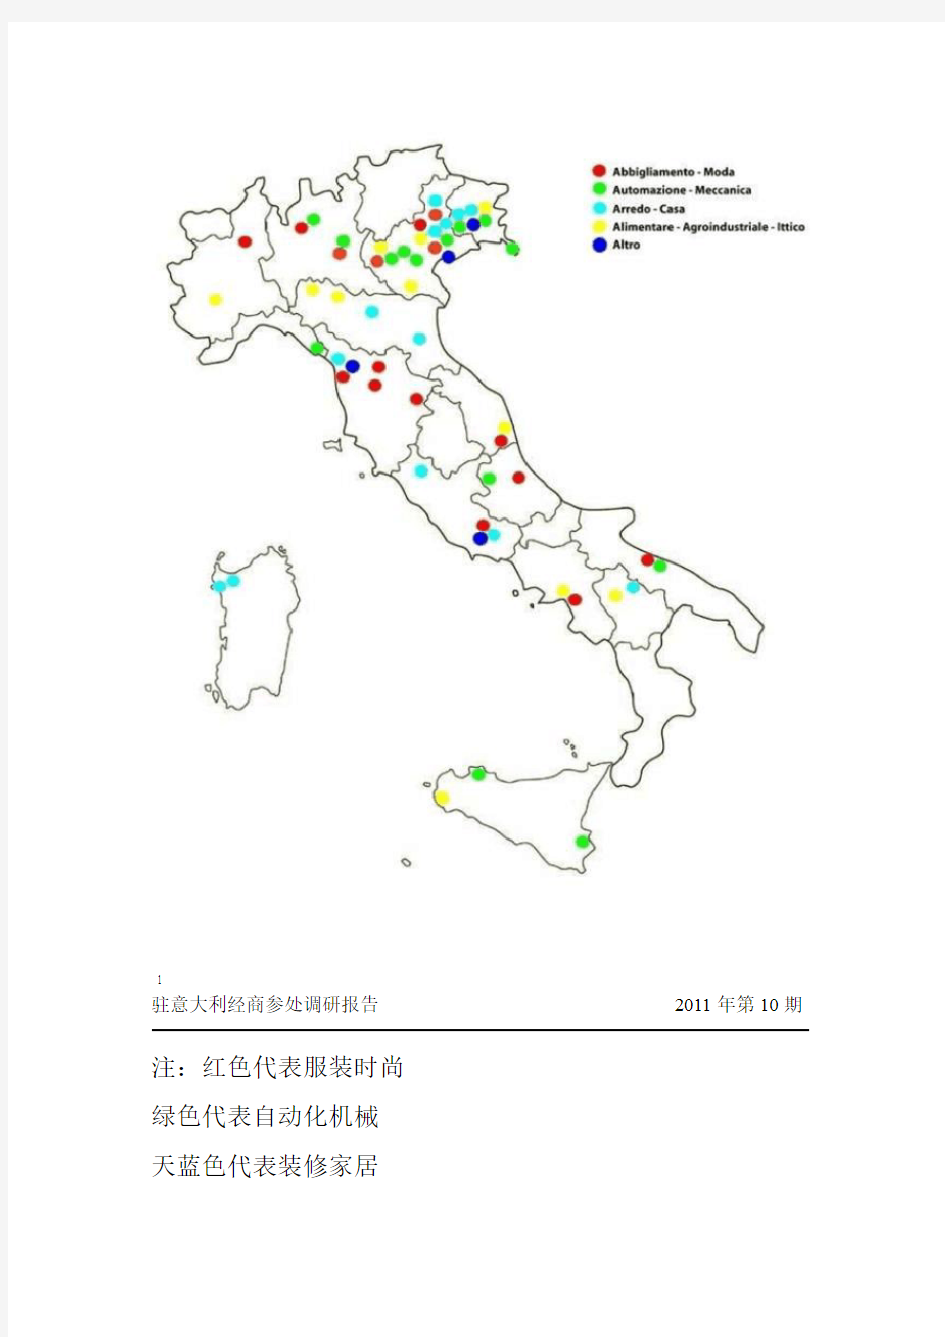 意大利产业带概况分析解析